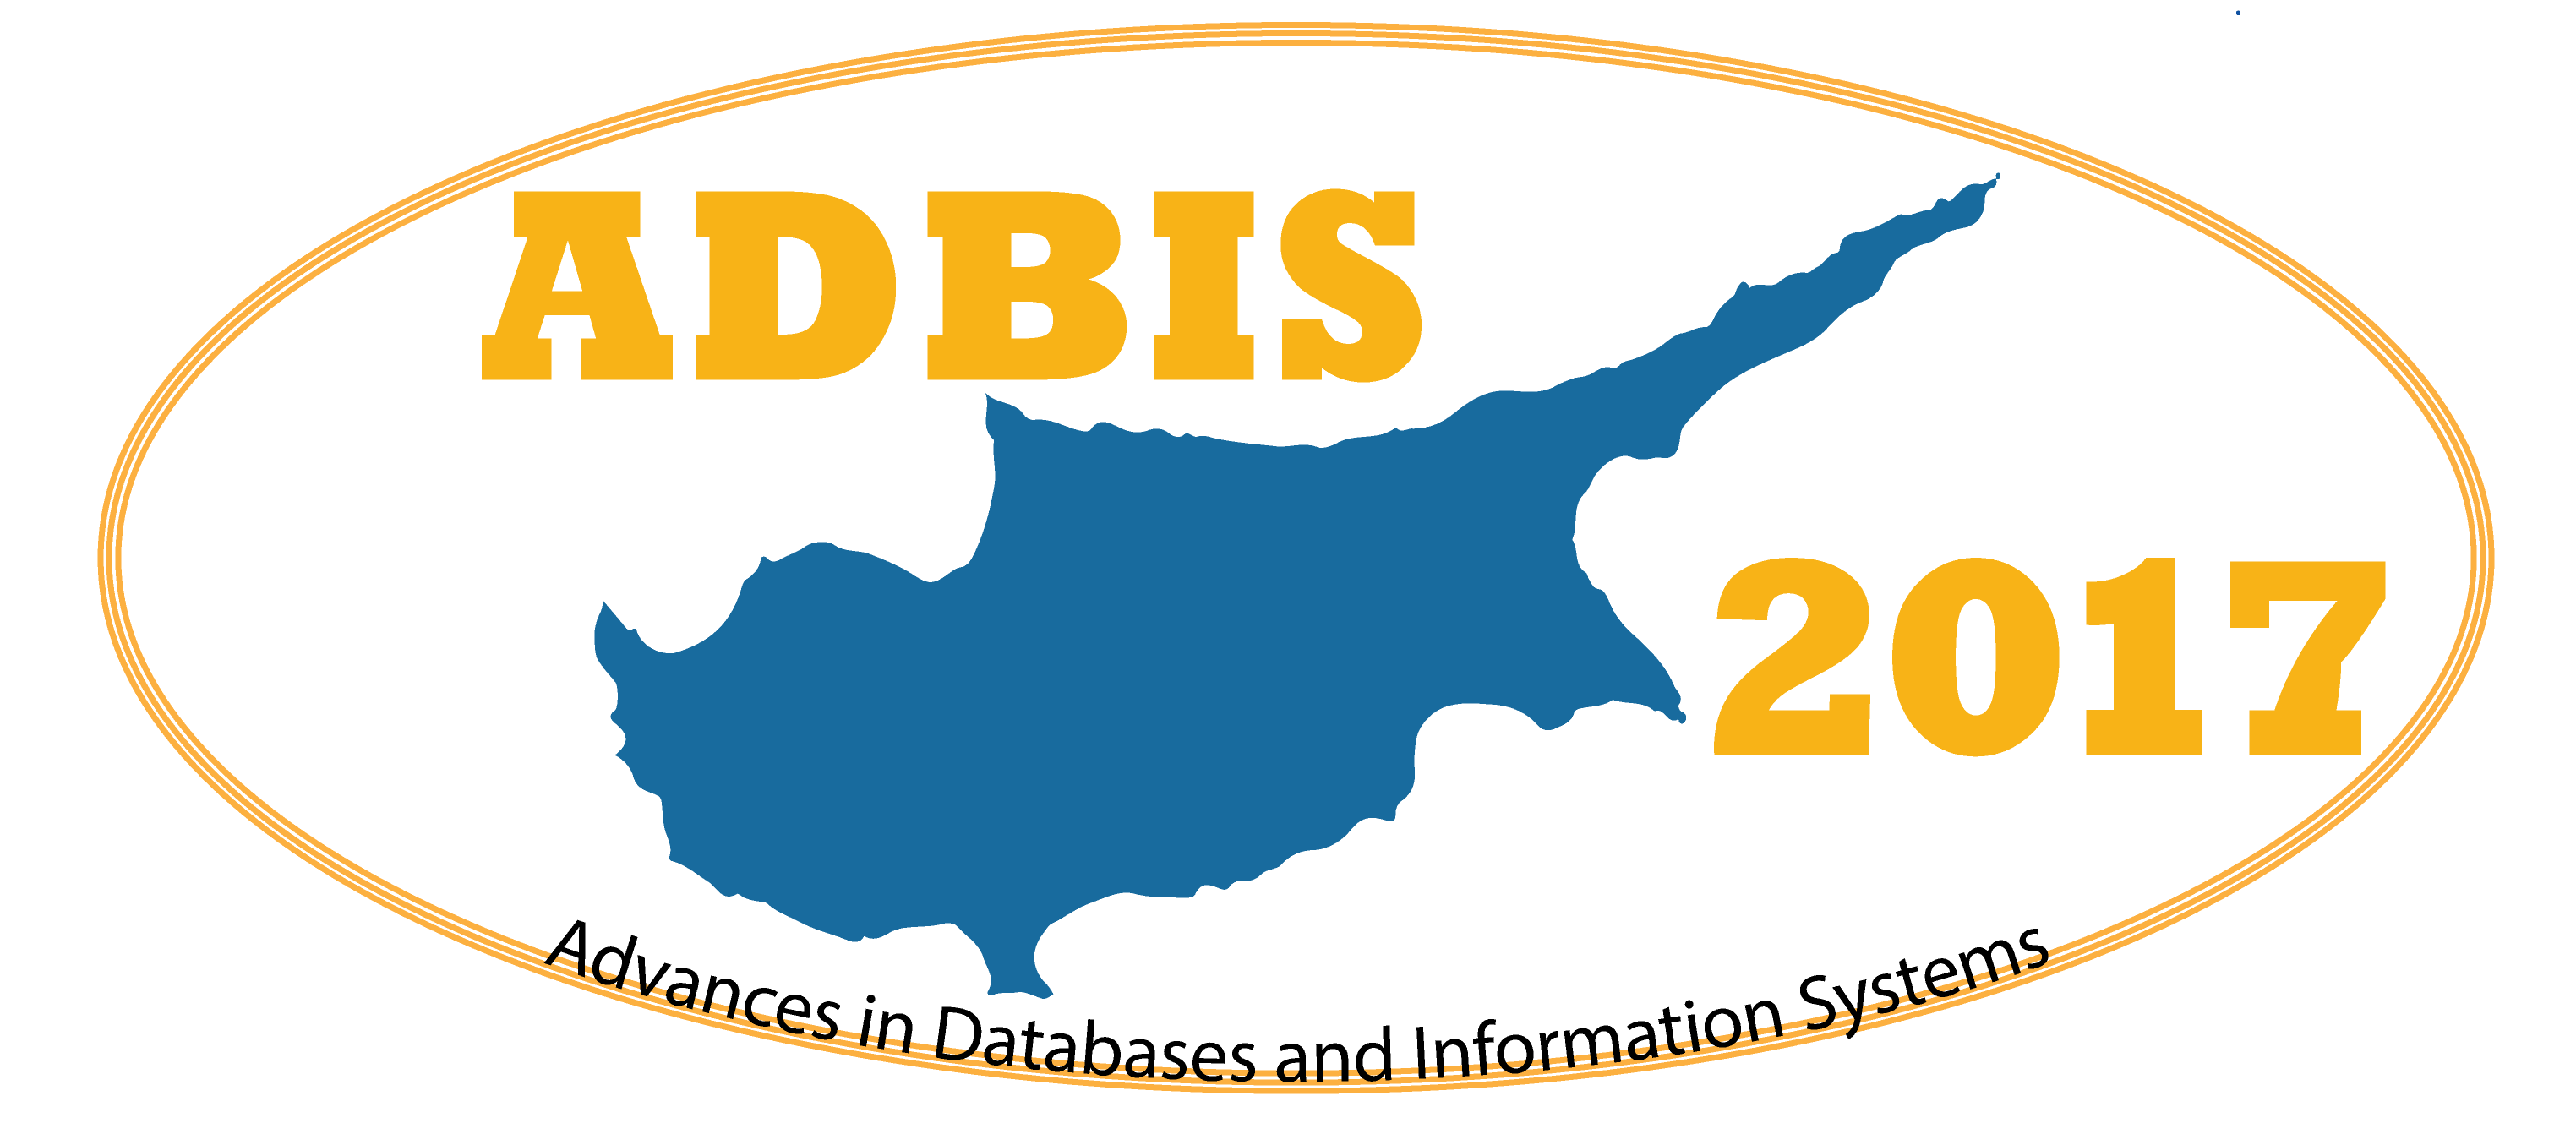 ADBIS 2017